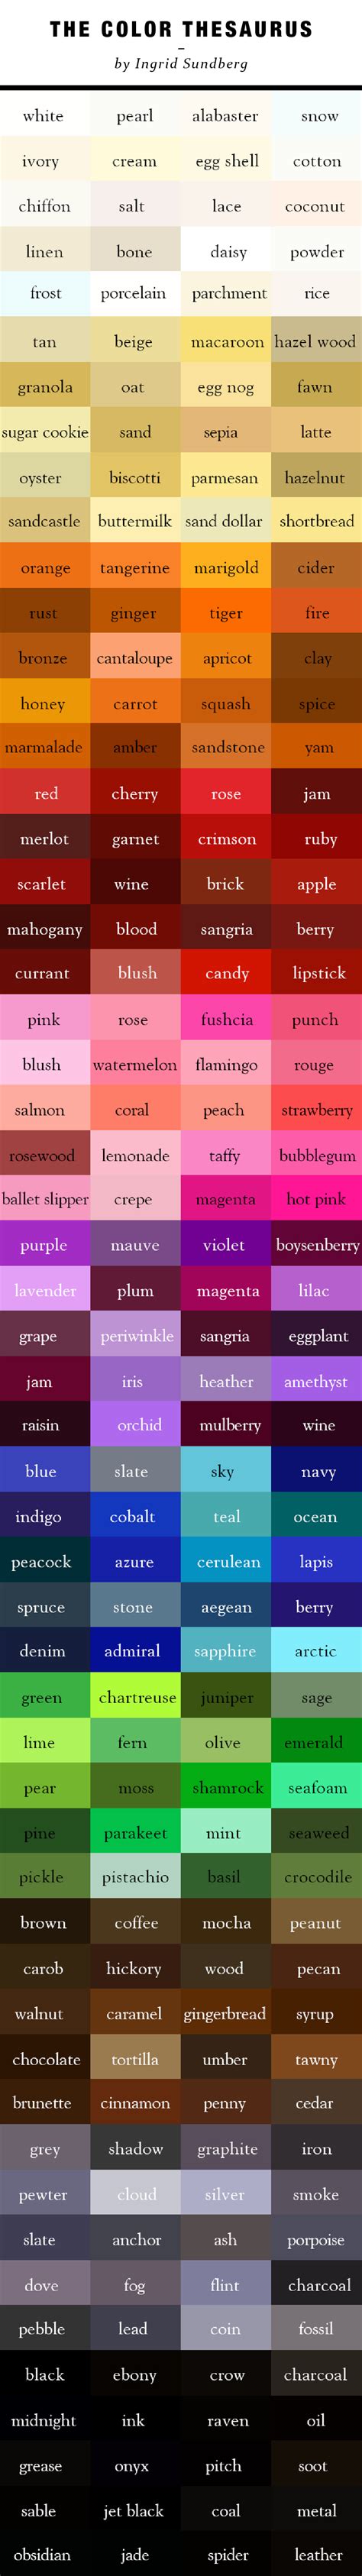 The Color Thesaurus By Ingrid Sundberg Colour Schemes Color Combos